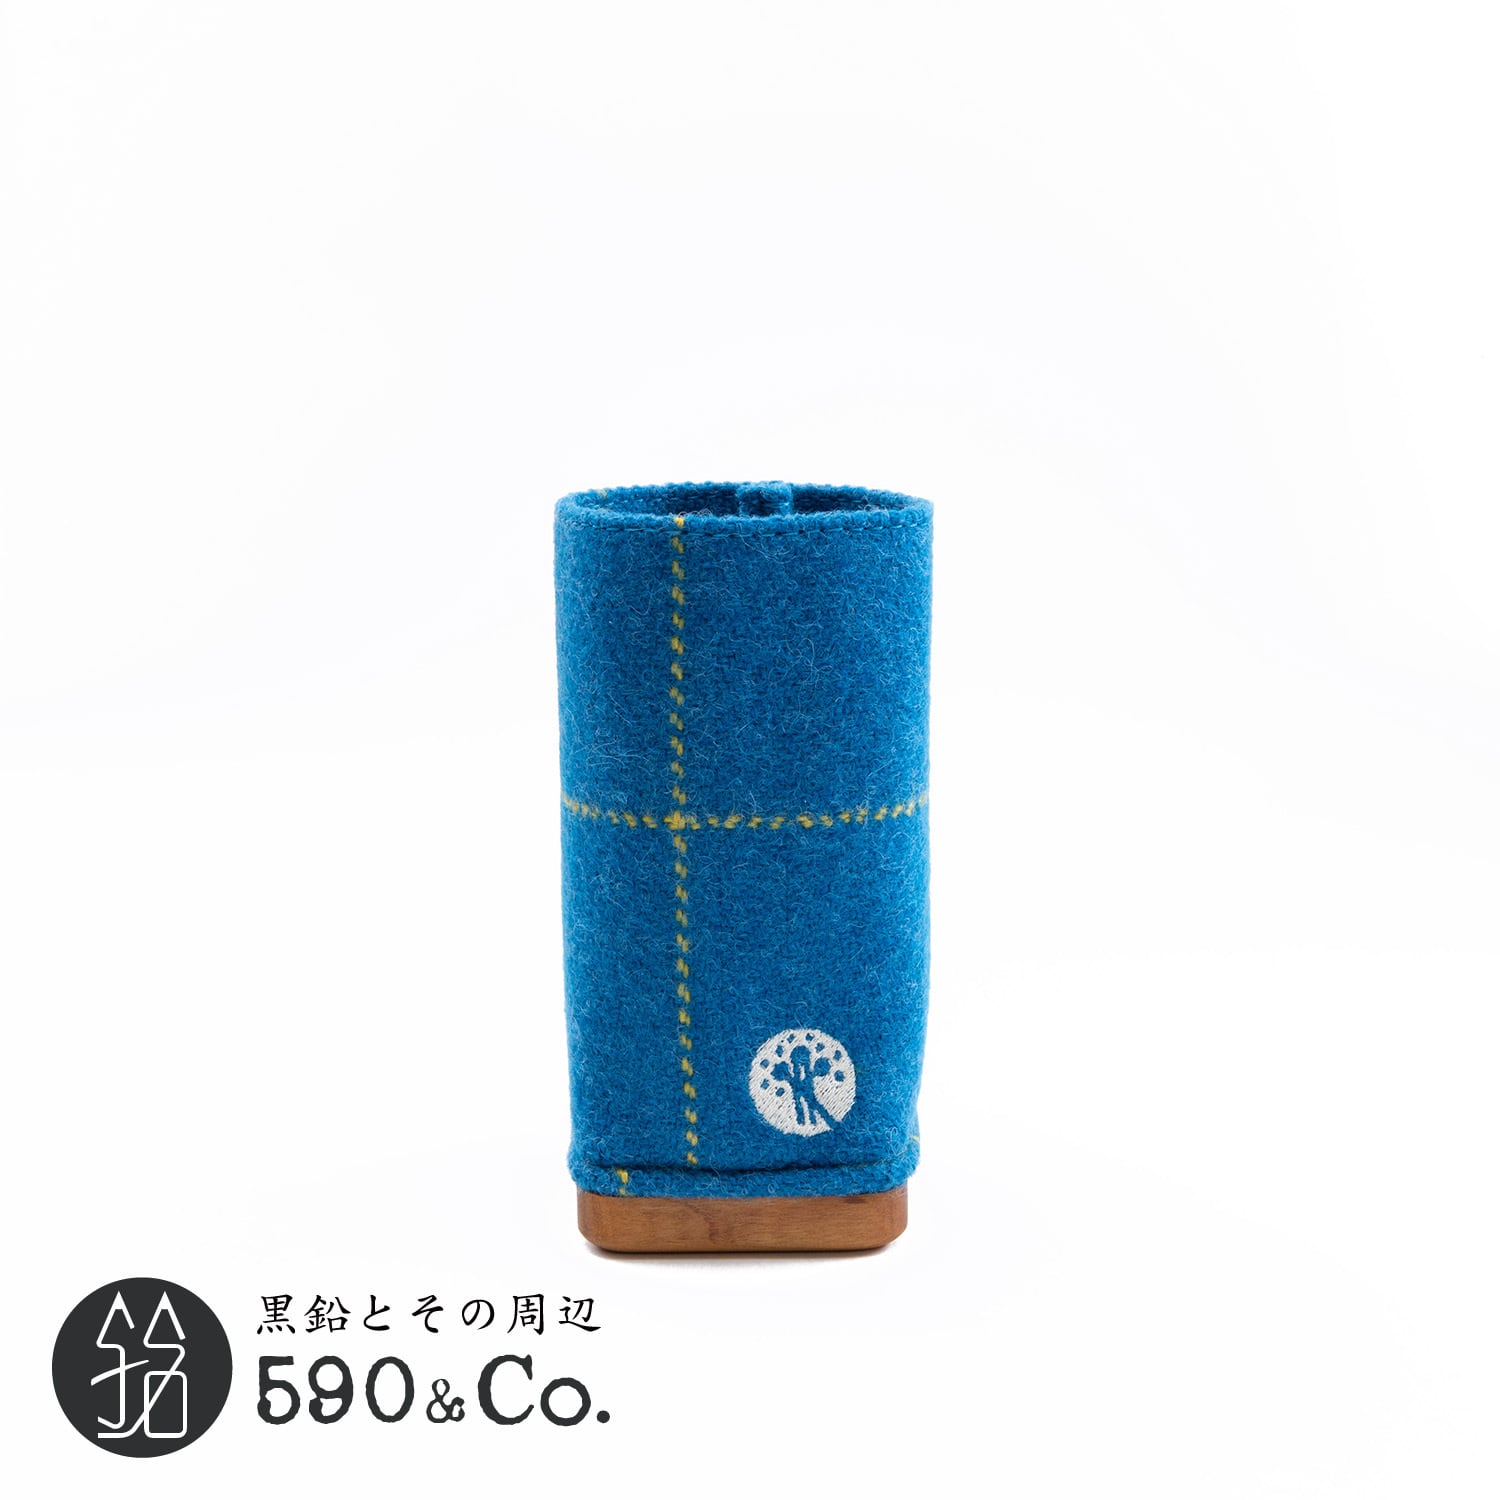 【キナリ木工所】別注 PENSTAND Upholstery fabrics×wood (Ribaco RB338ブルー/イエロー)  590Co.